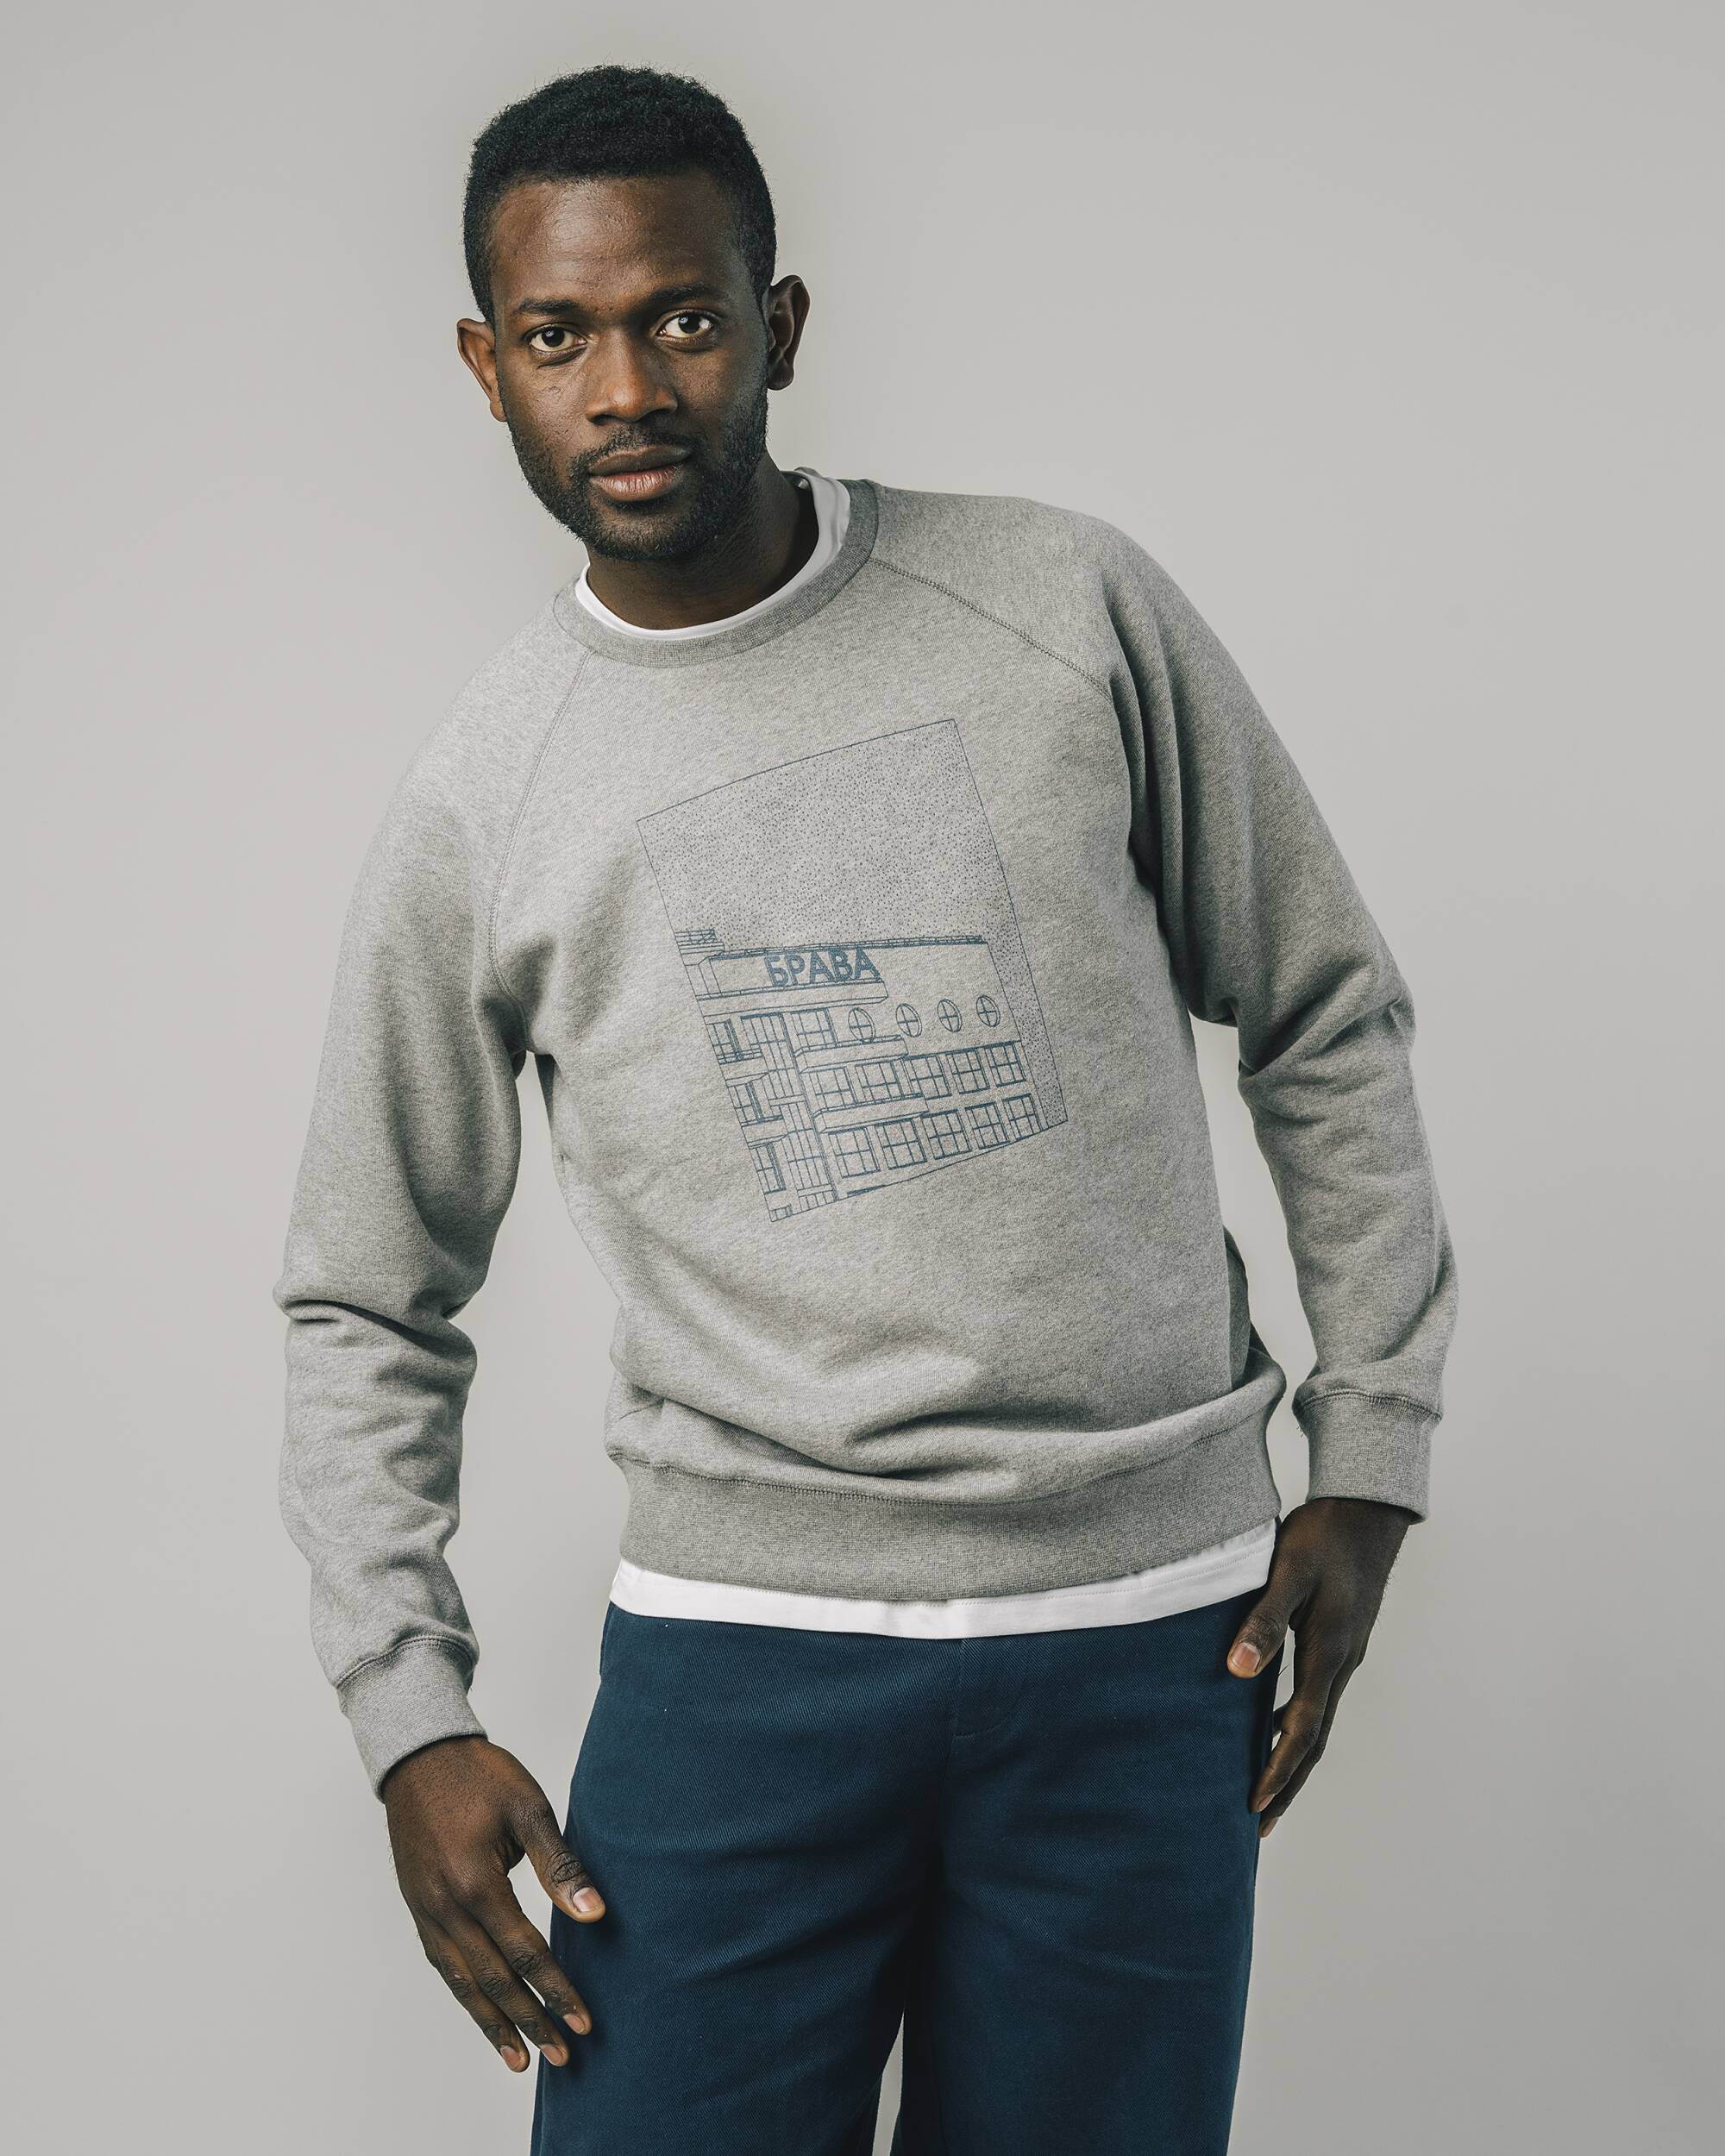 Sweatshirt "Dirstrict" in grau aus 100% Bio - Baumwolle von Brava Fabrics